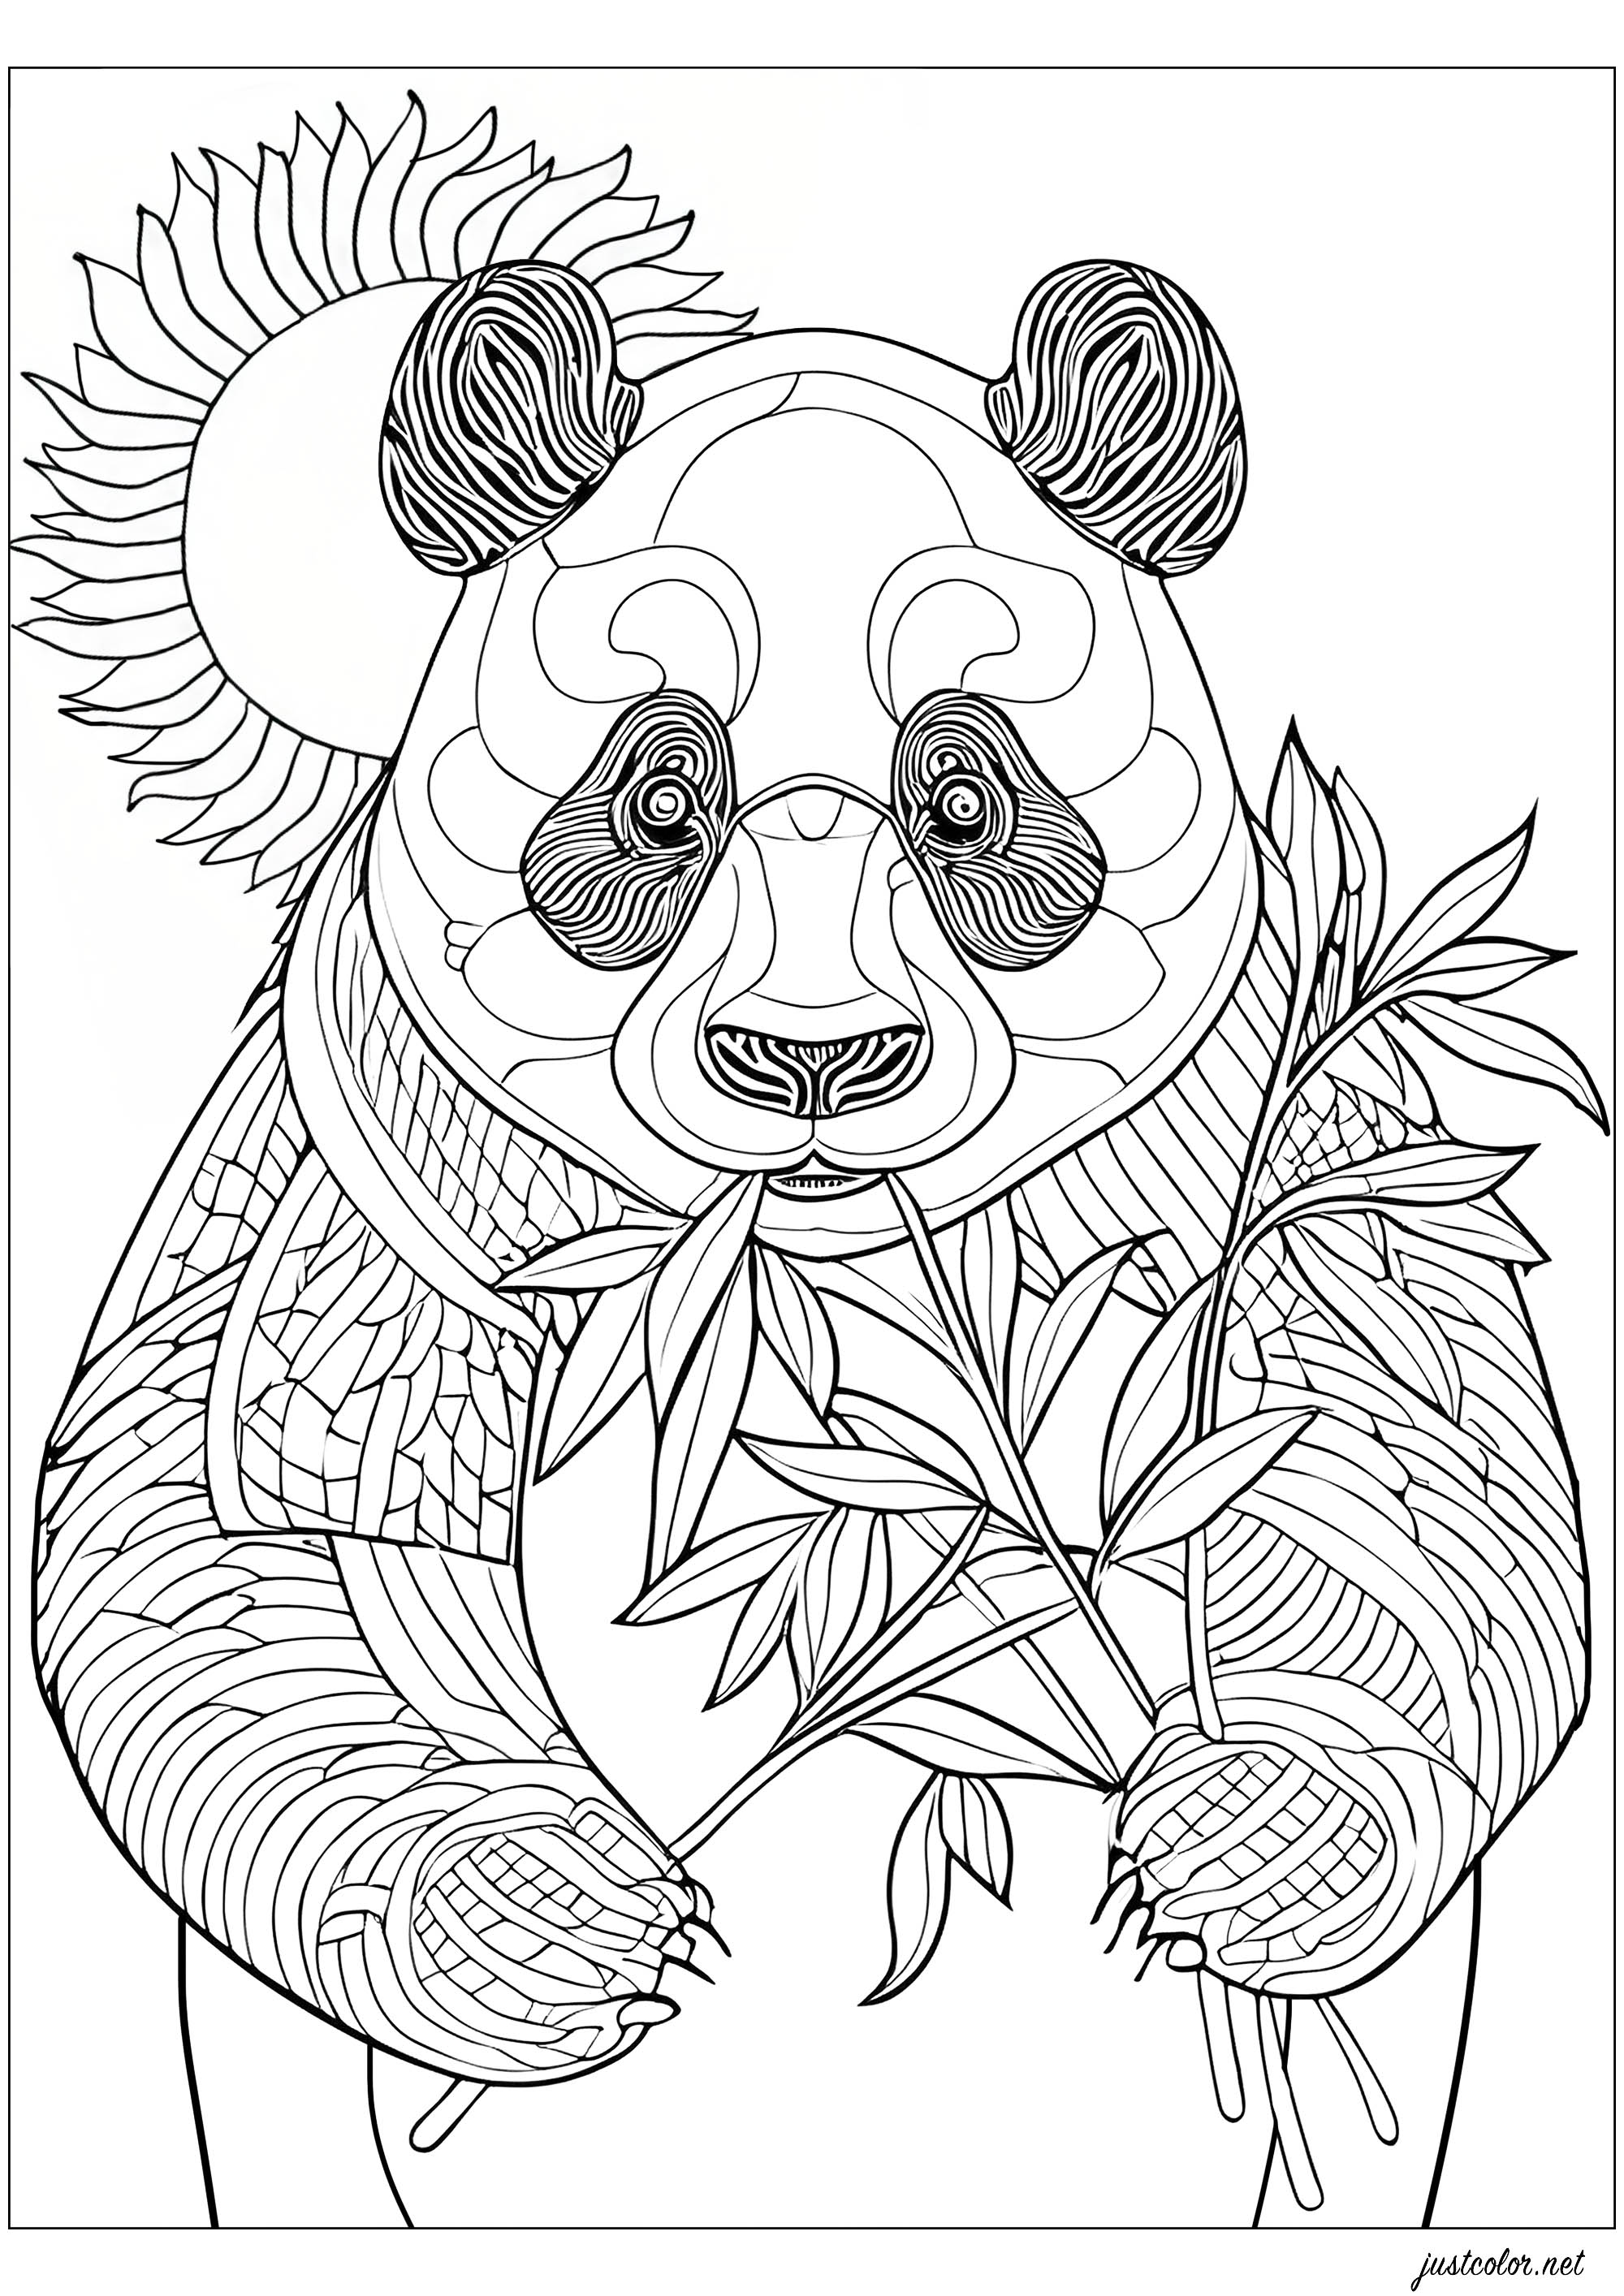 Panda che mangia il bambù, in piedi. Colorate anche il bel sole dietro di lui